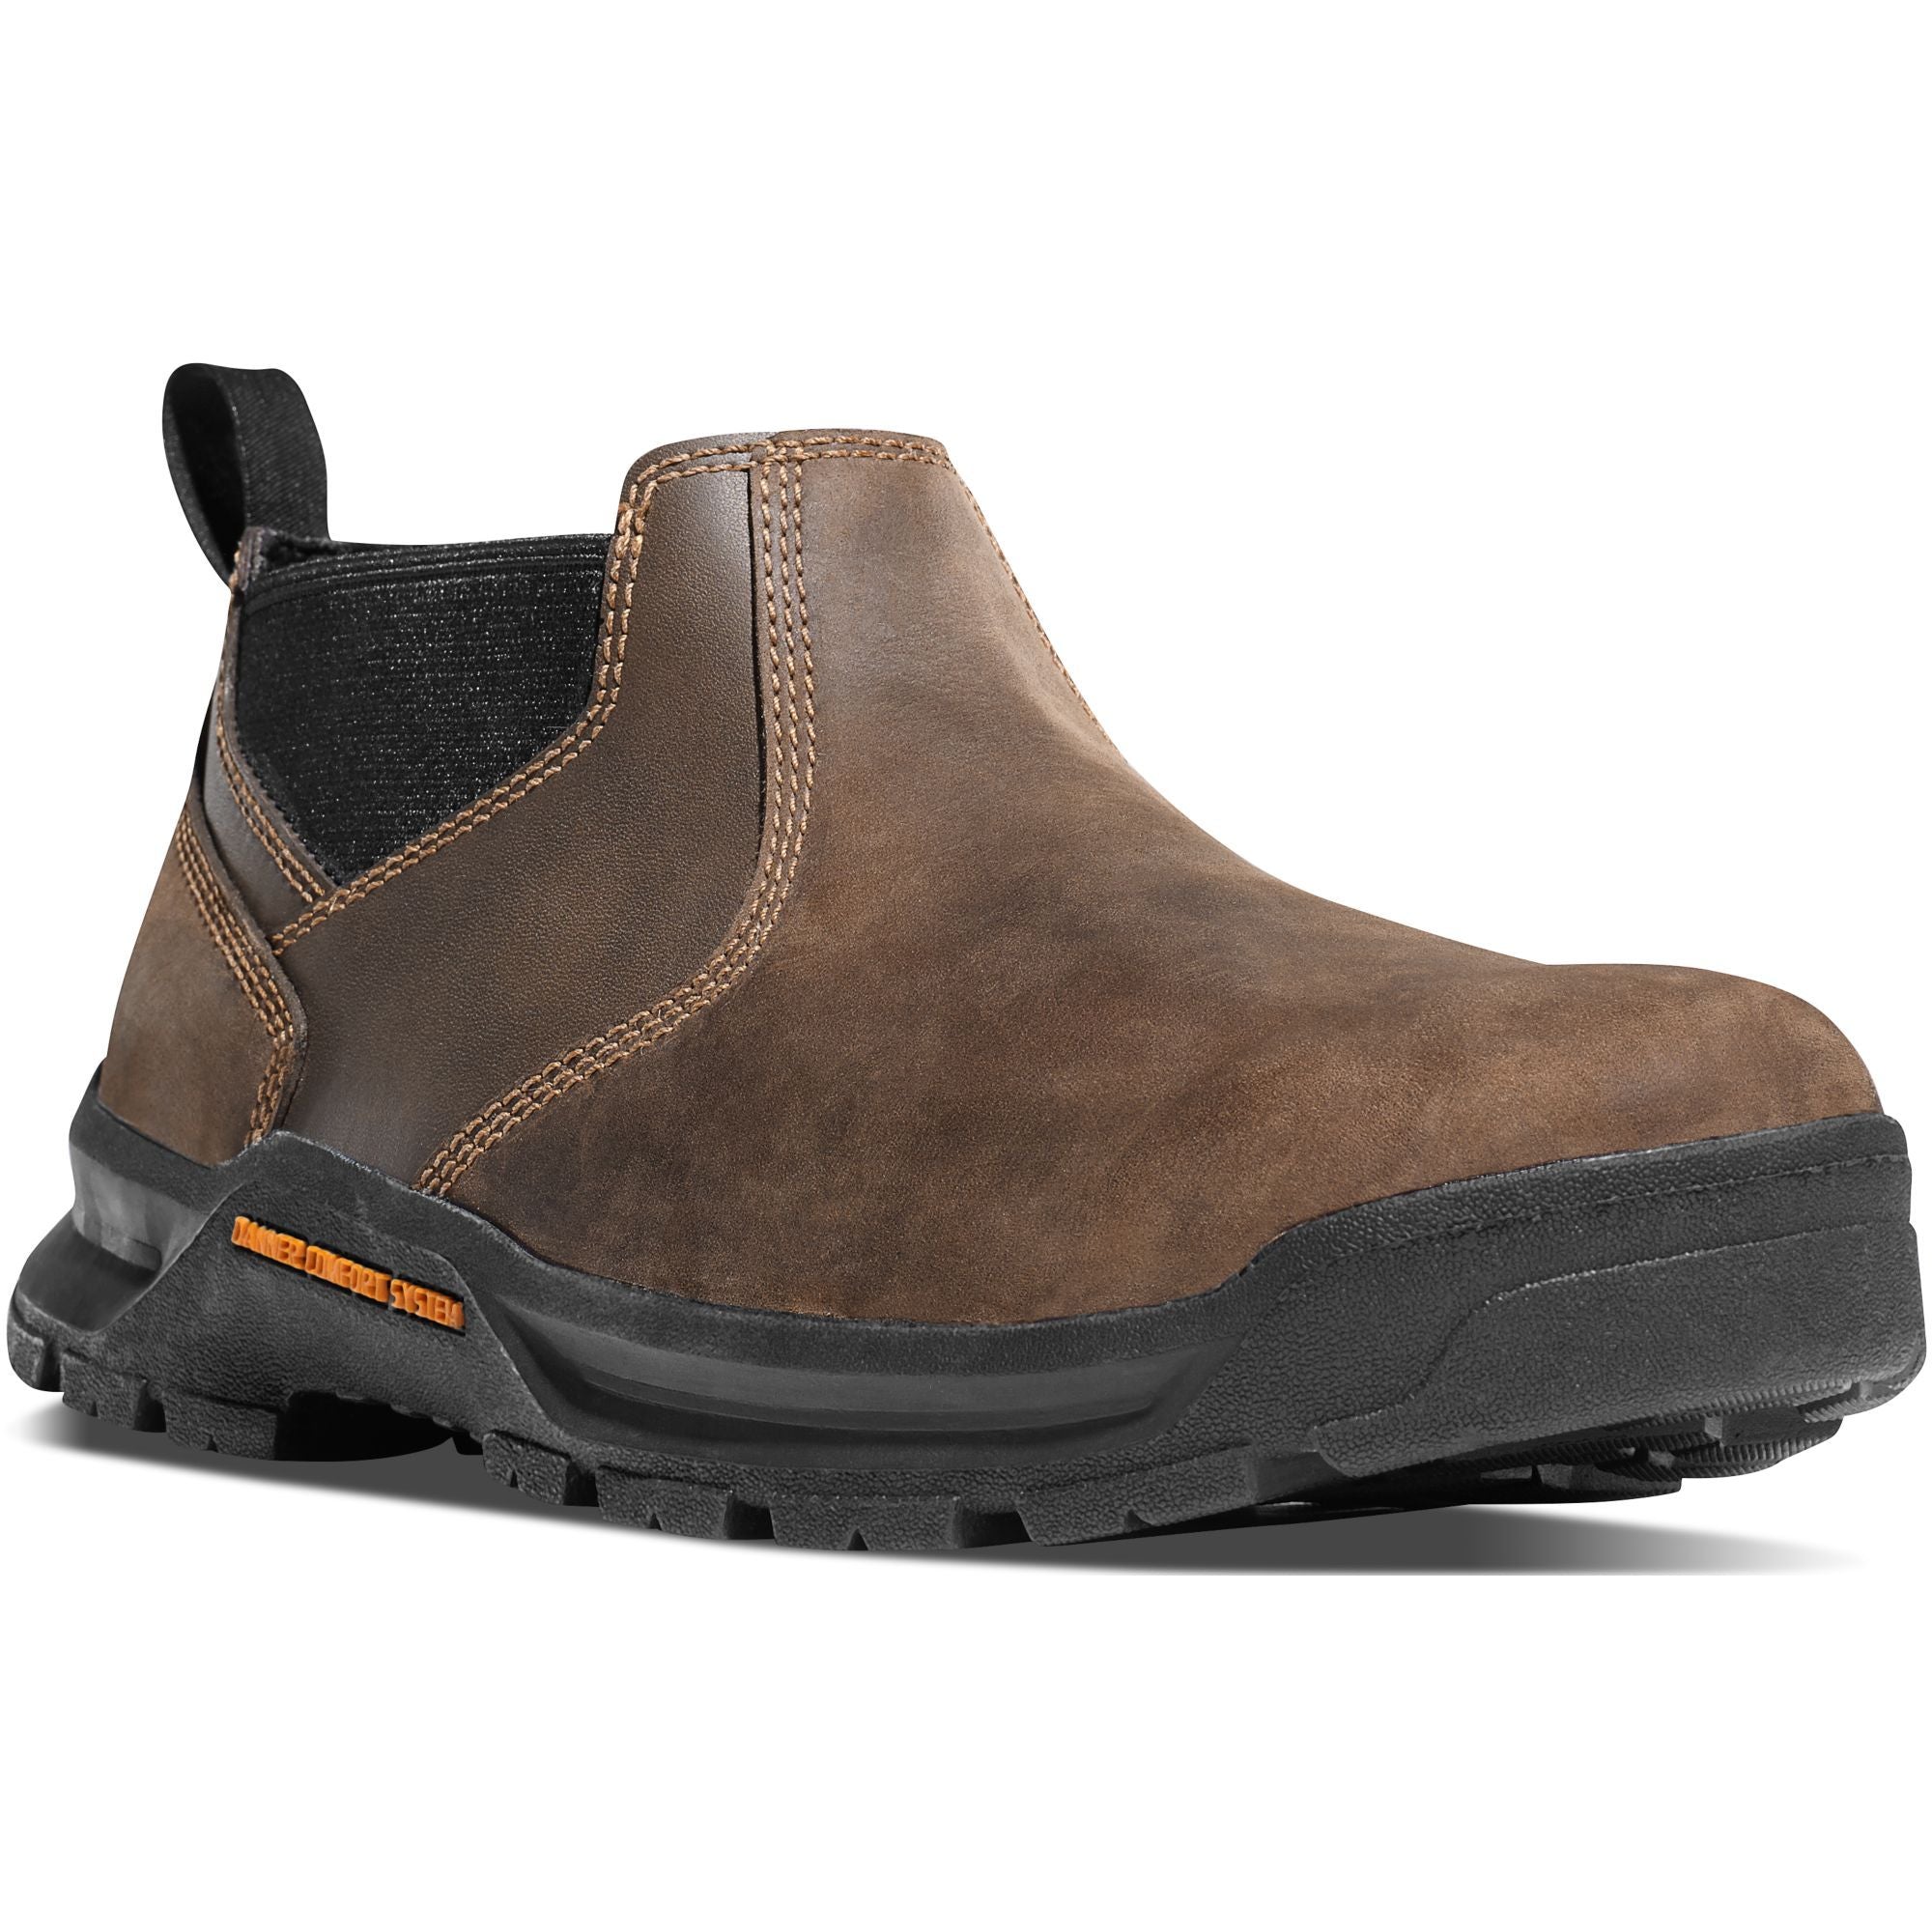 Danner Men's Crafter Romeo 3" Work Shoe - Brown - 12441 7.5 / Medium / Brown - Overlook Boots